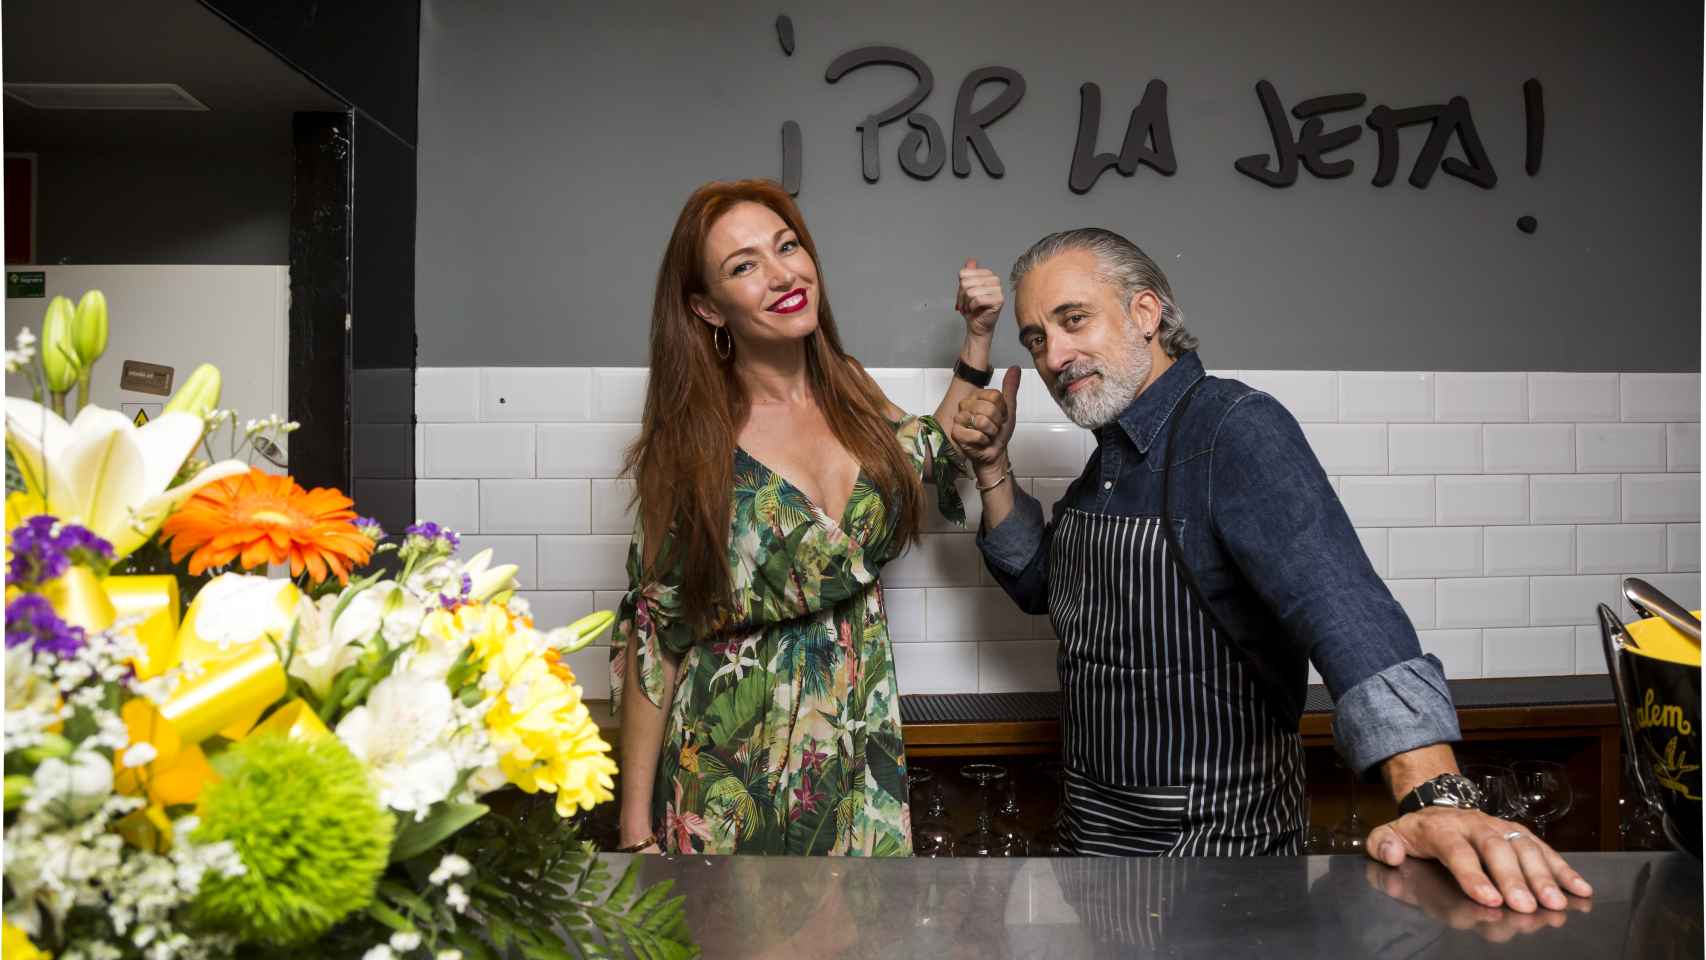 Sergio Arola y Silvia Fominaya en el que era su restaurante: ¡Por la jeta!